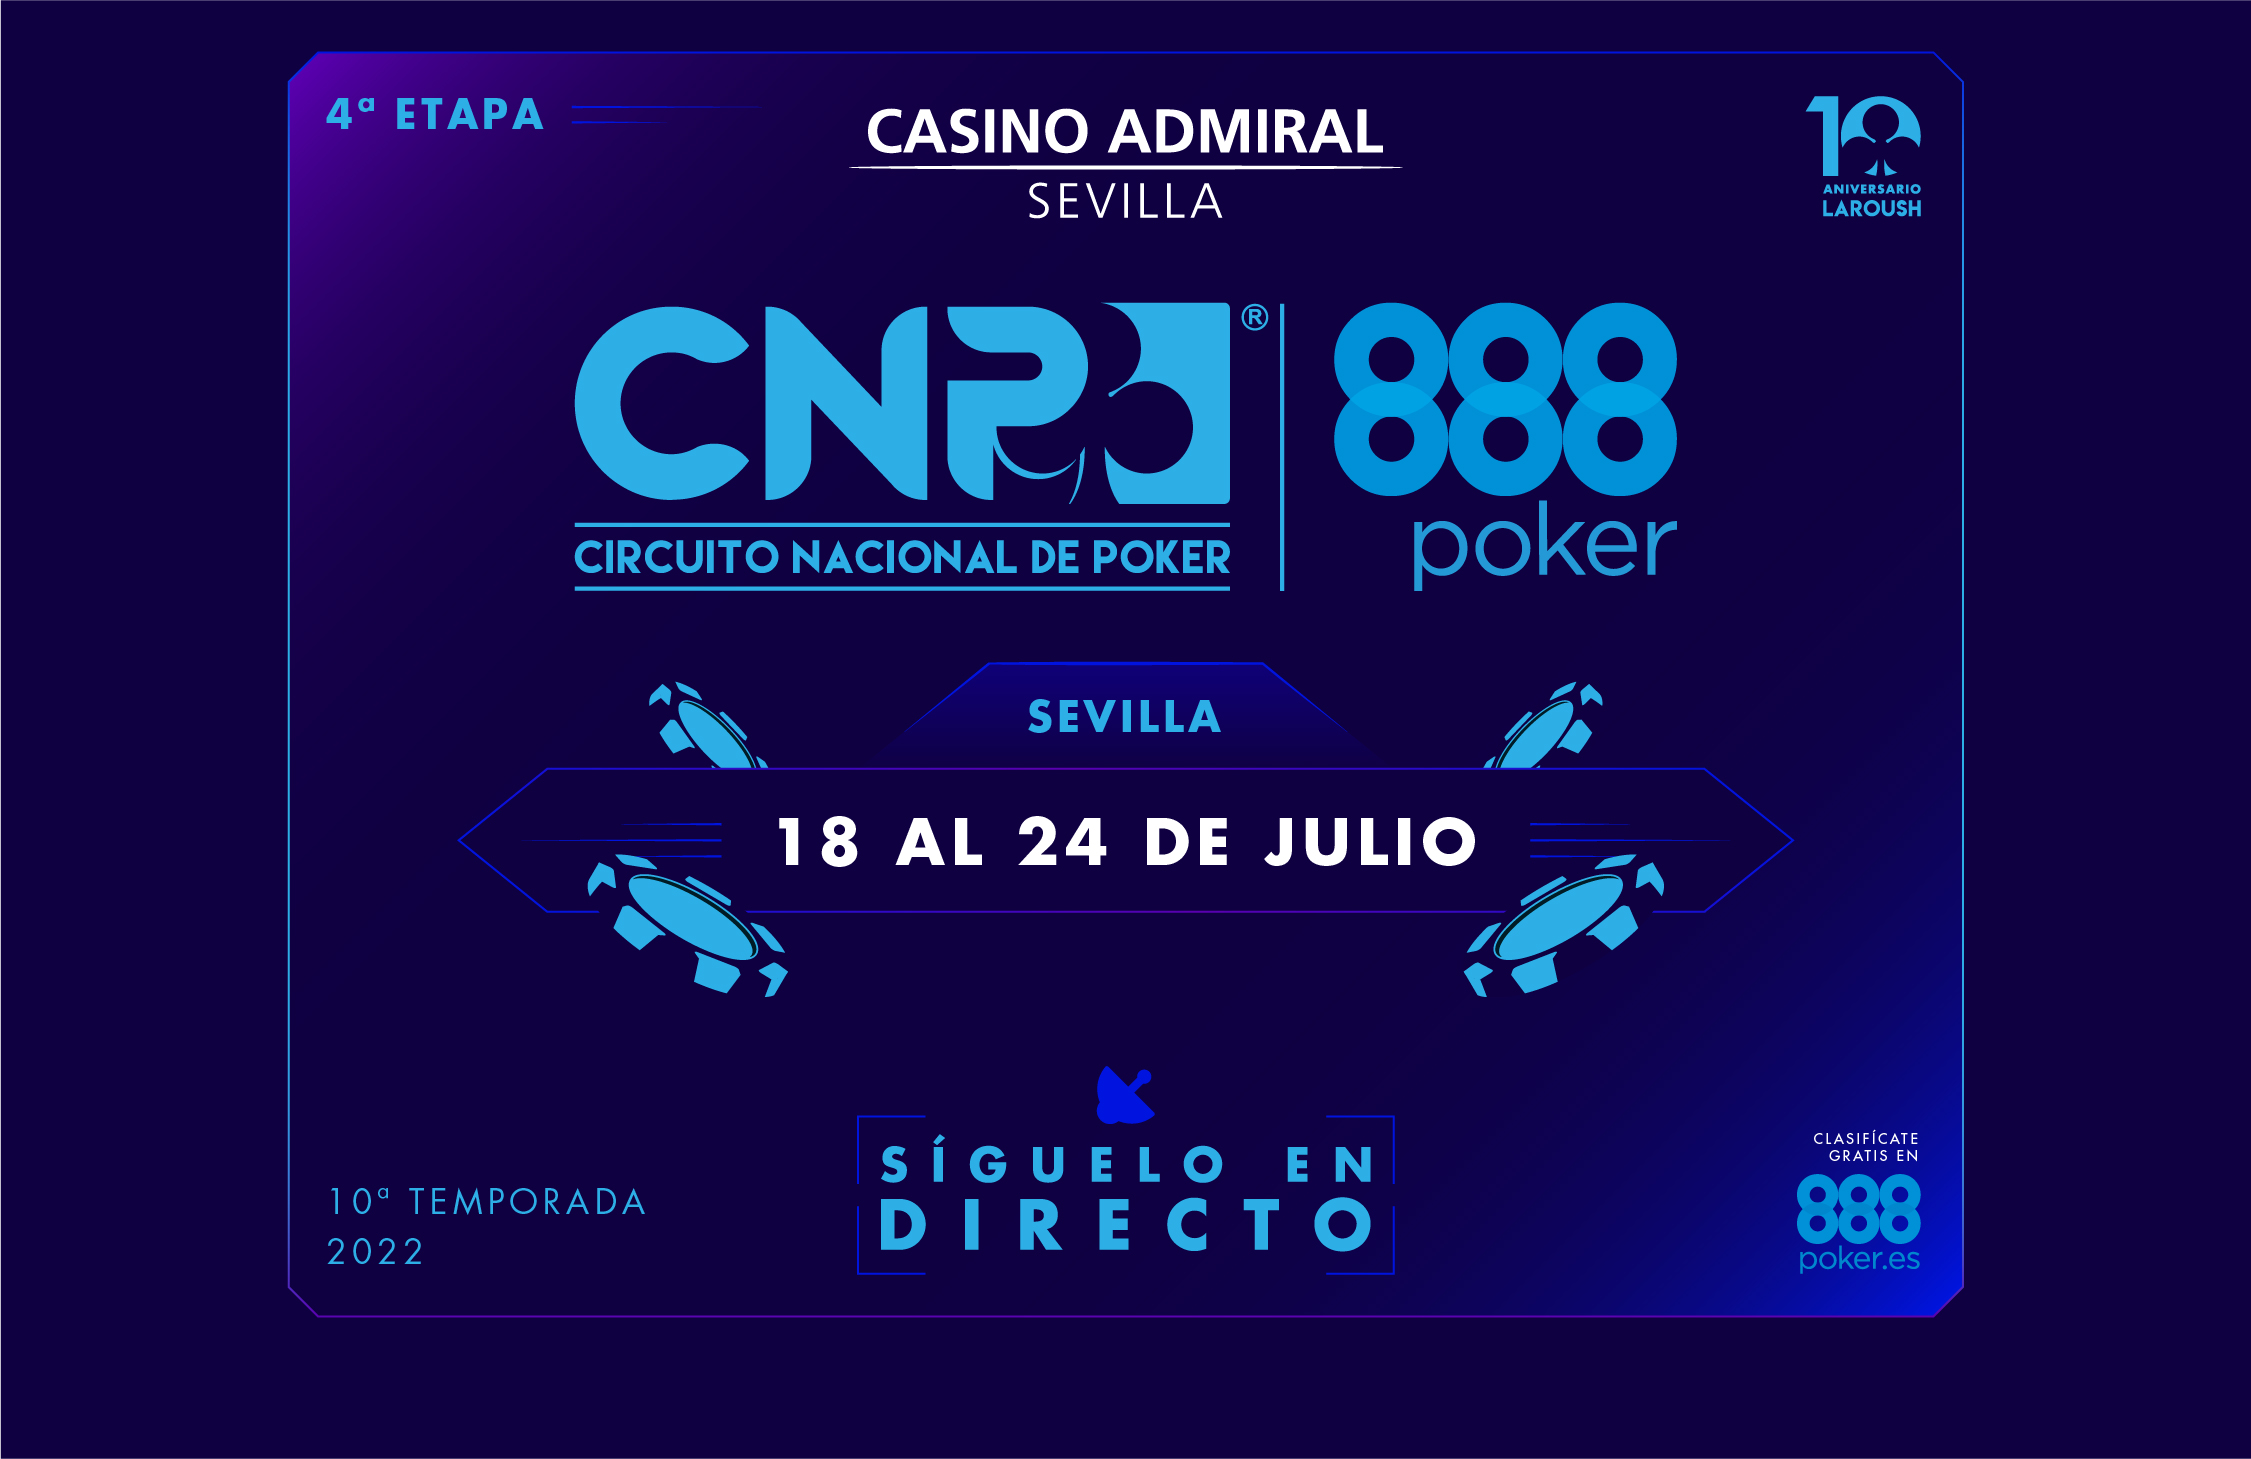 CNP888 Sevilla